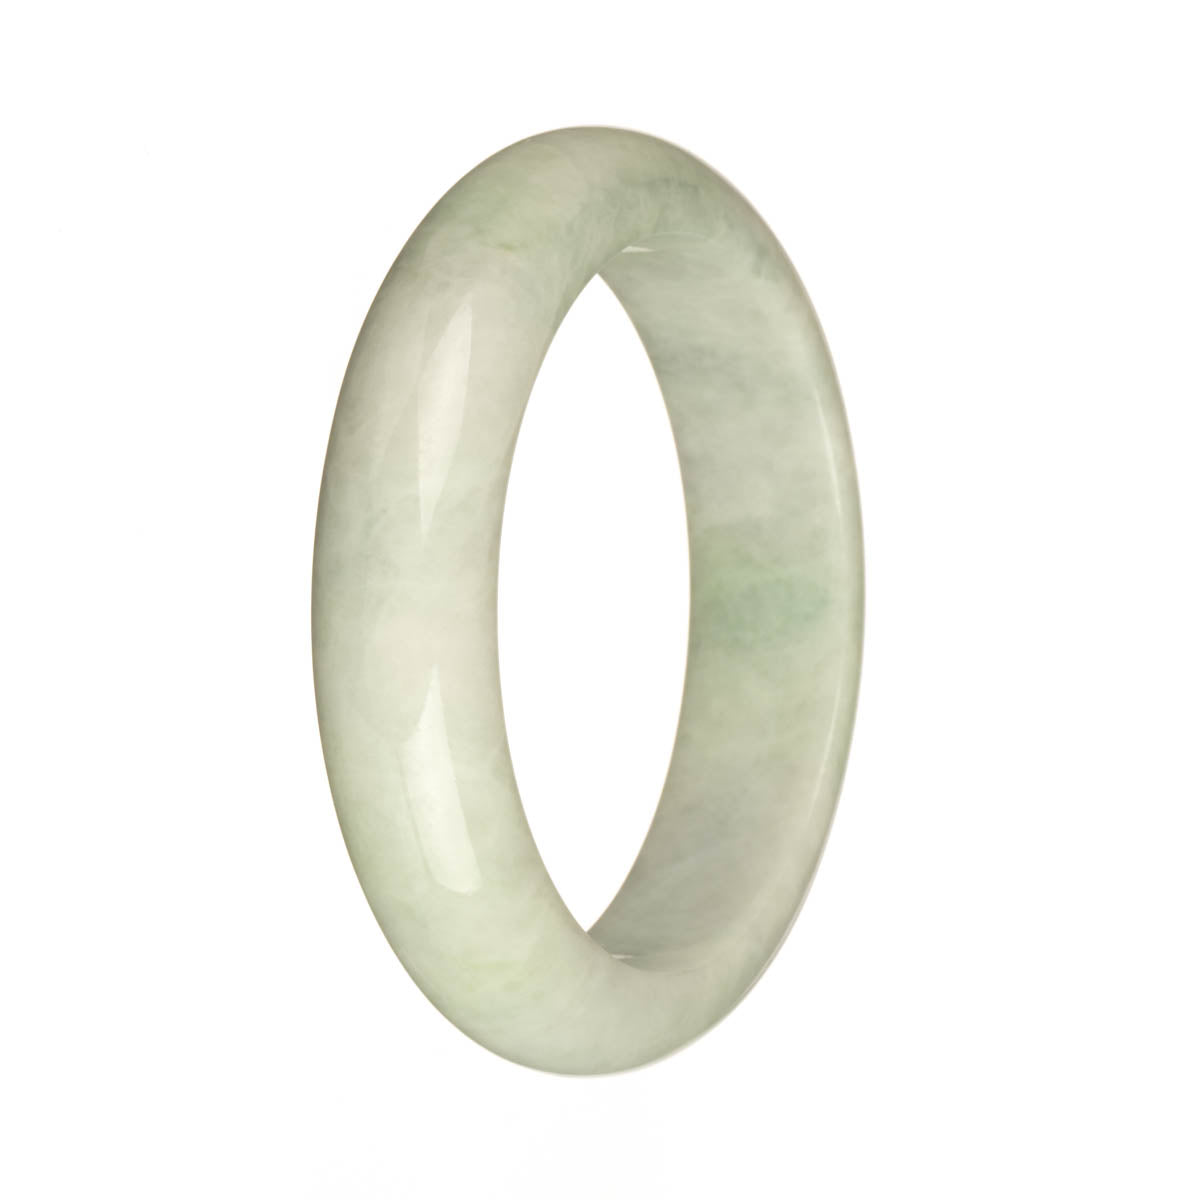 56.8mm Pale Green Jade Bangle Bracelet